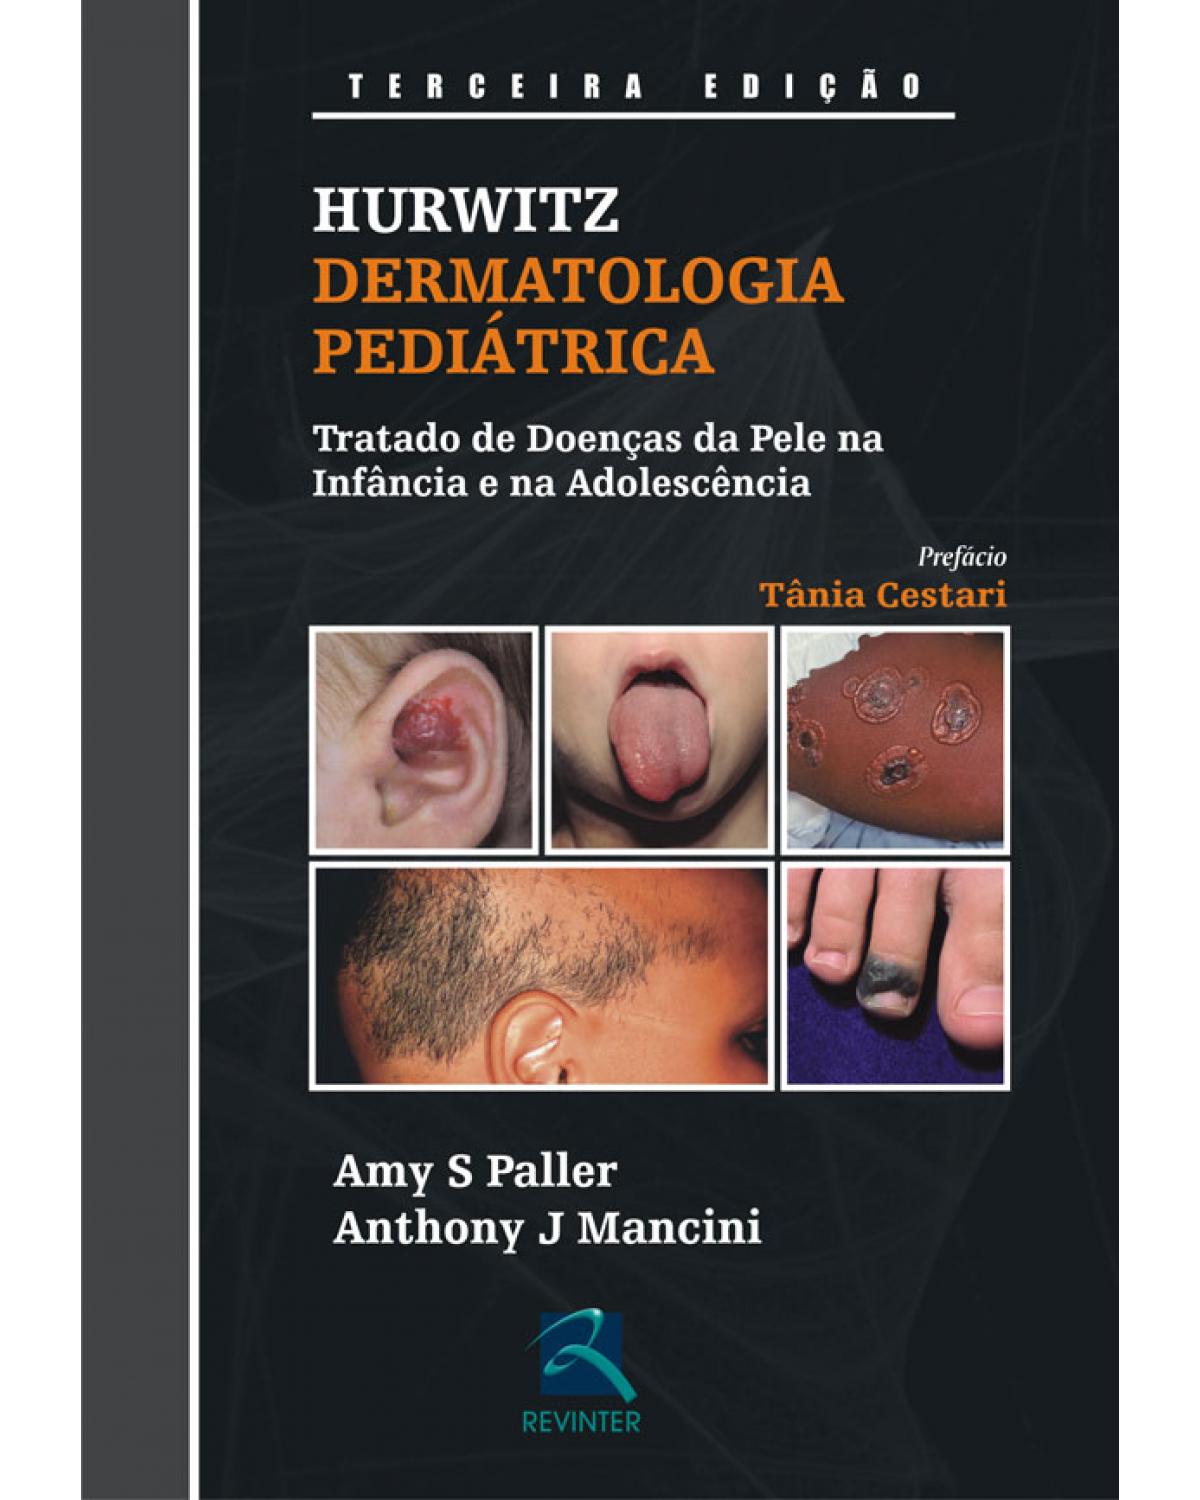 Hurwitz - Dermatologia pediátrica - tratado de doenças da pele na infância e na adolescência - 3ª Edição | 2009